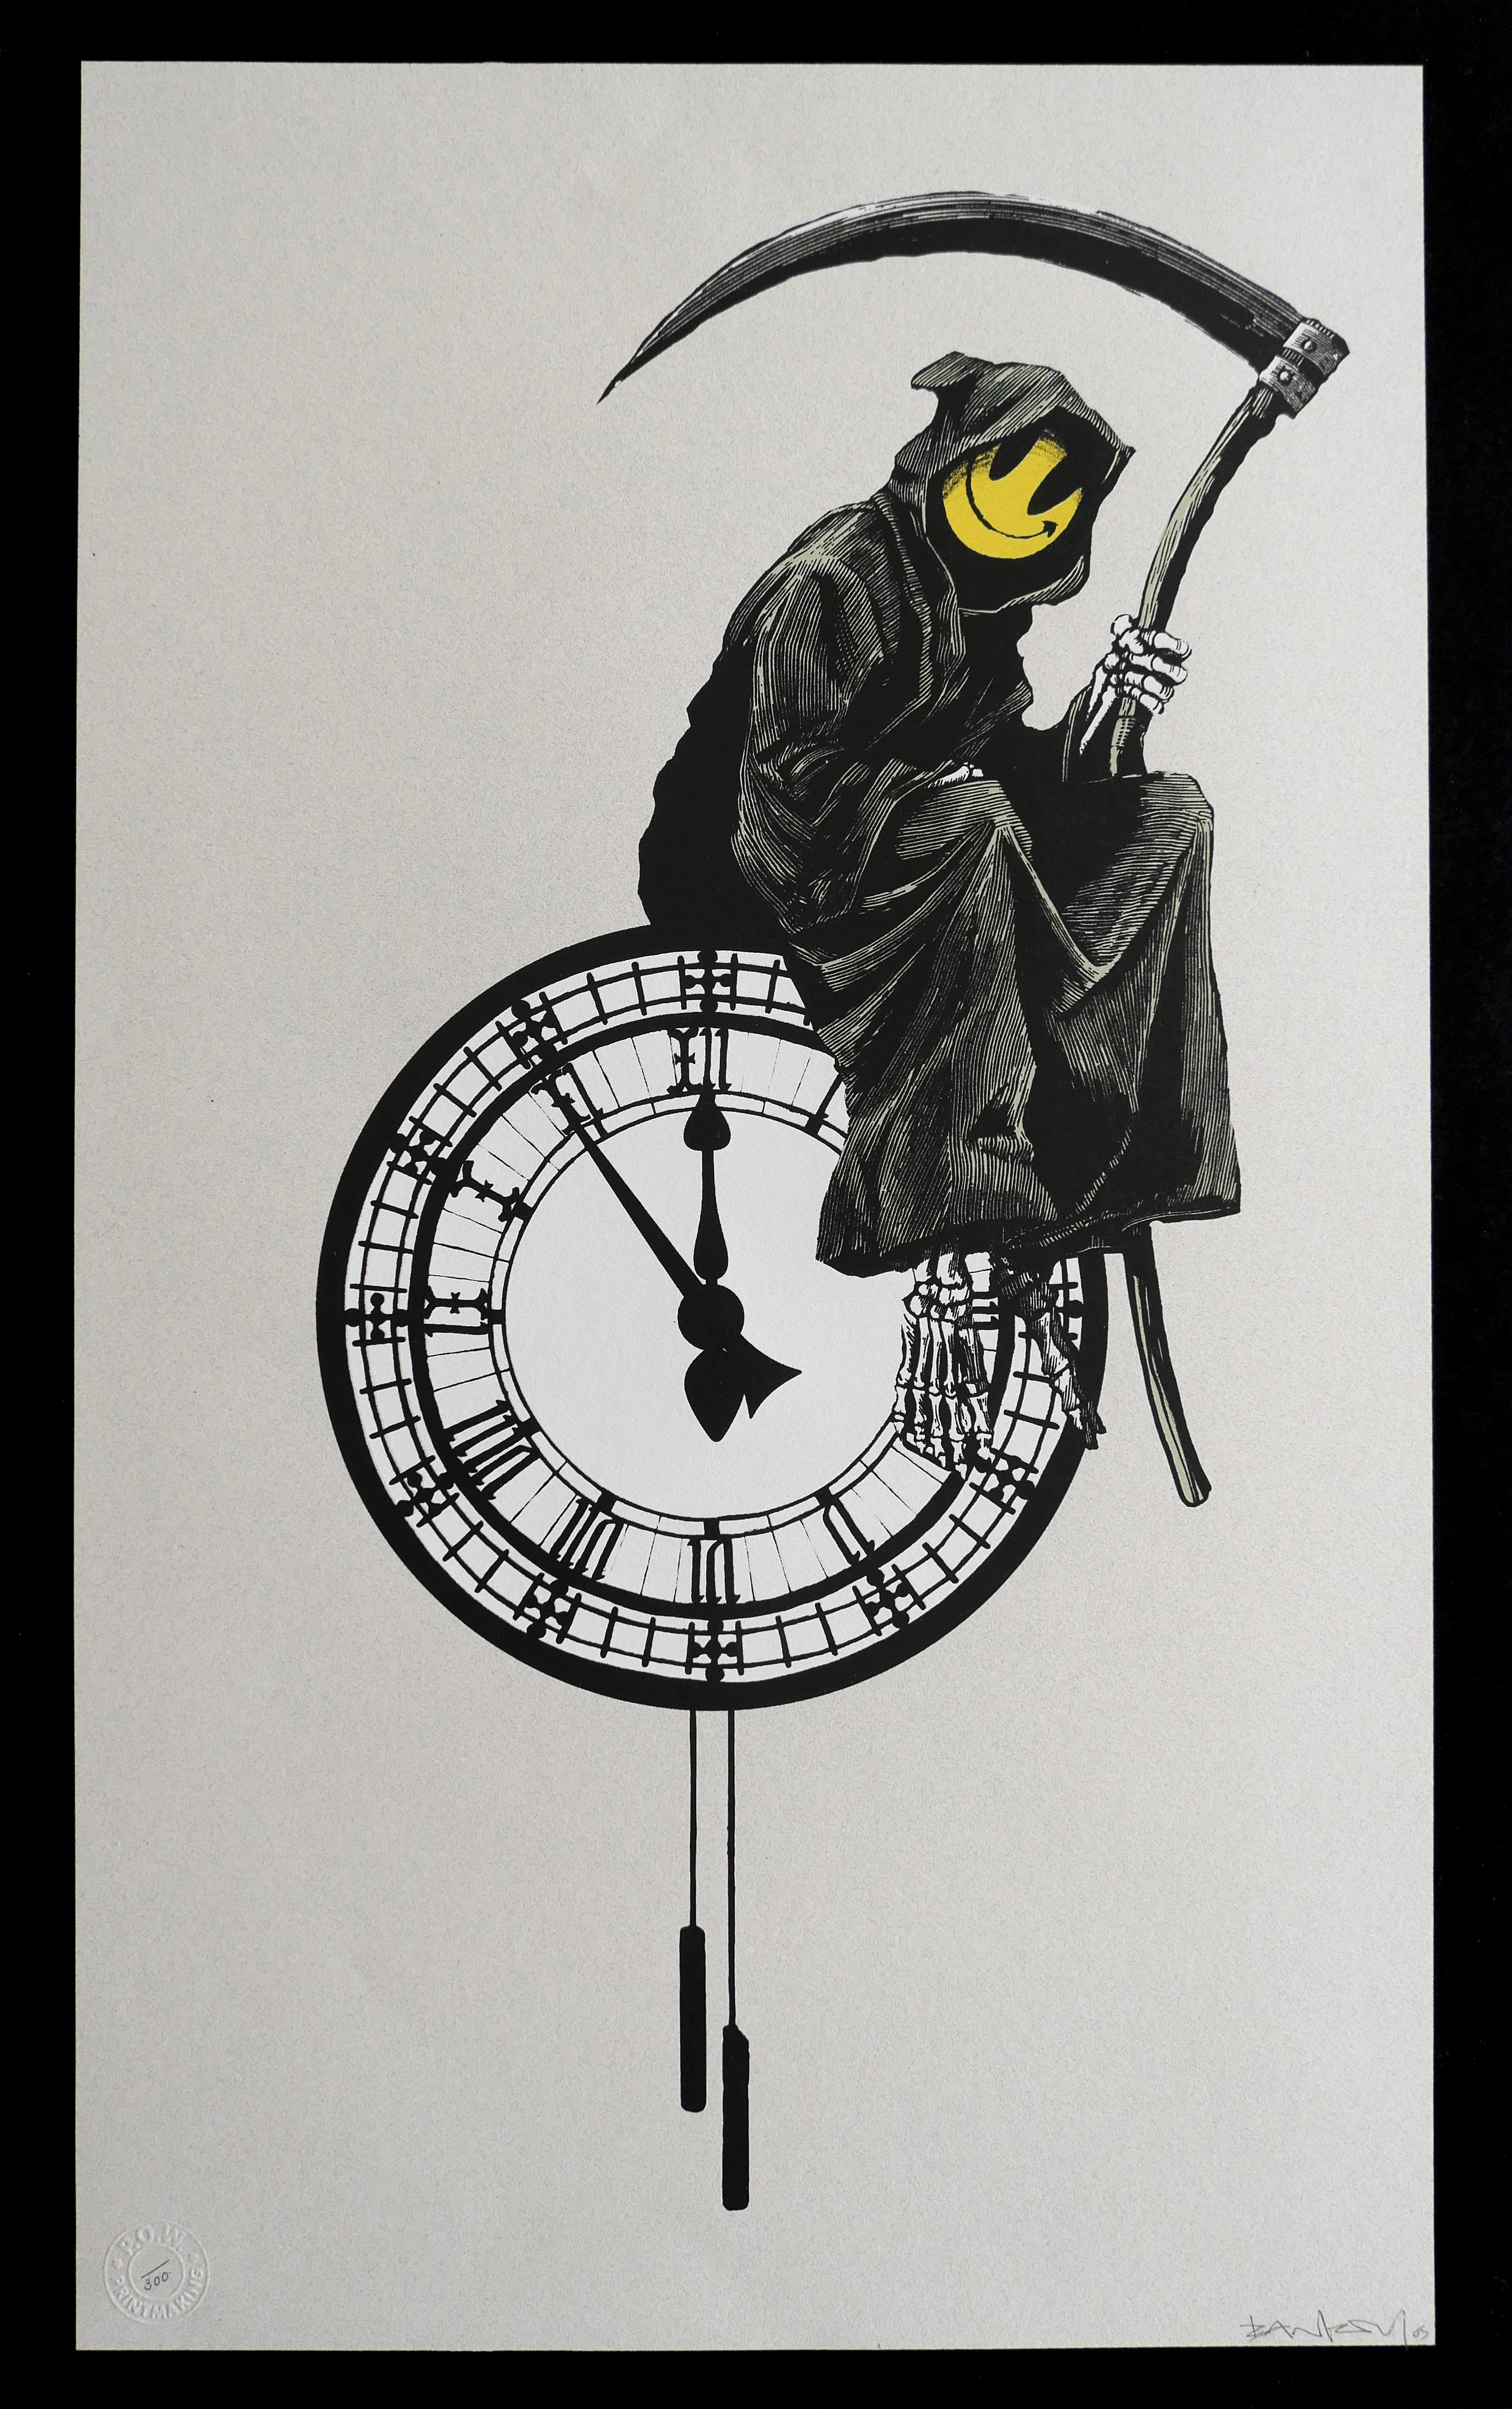 Grin Reaper by Banksy Background & Meaning | MyArtBroker